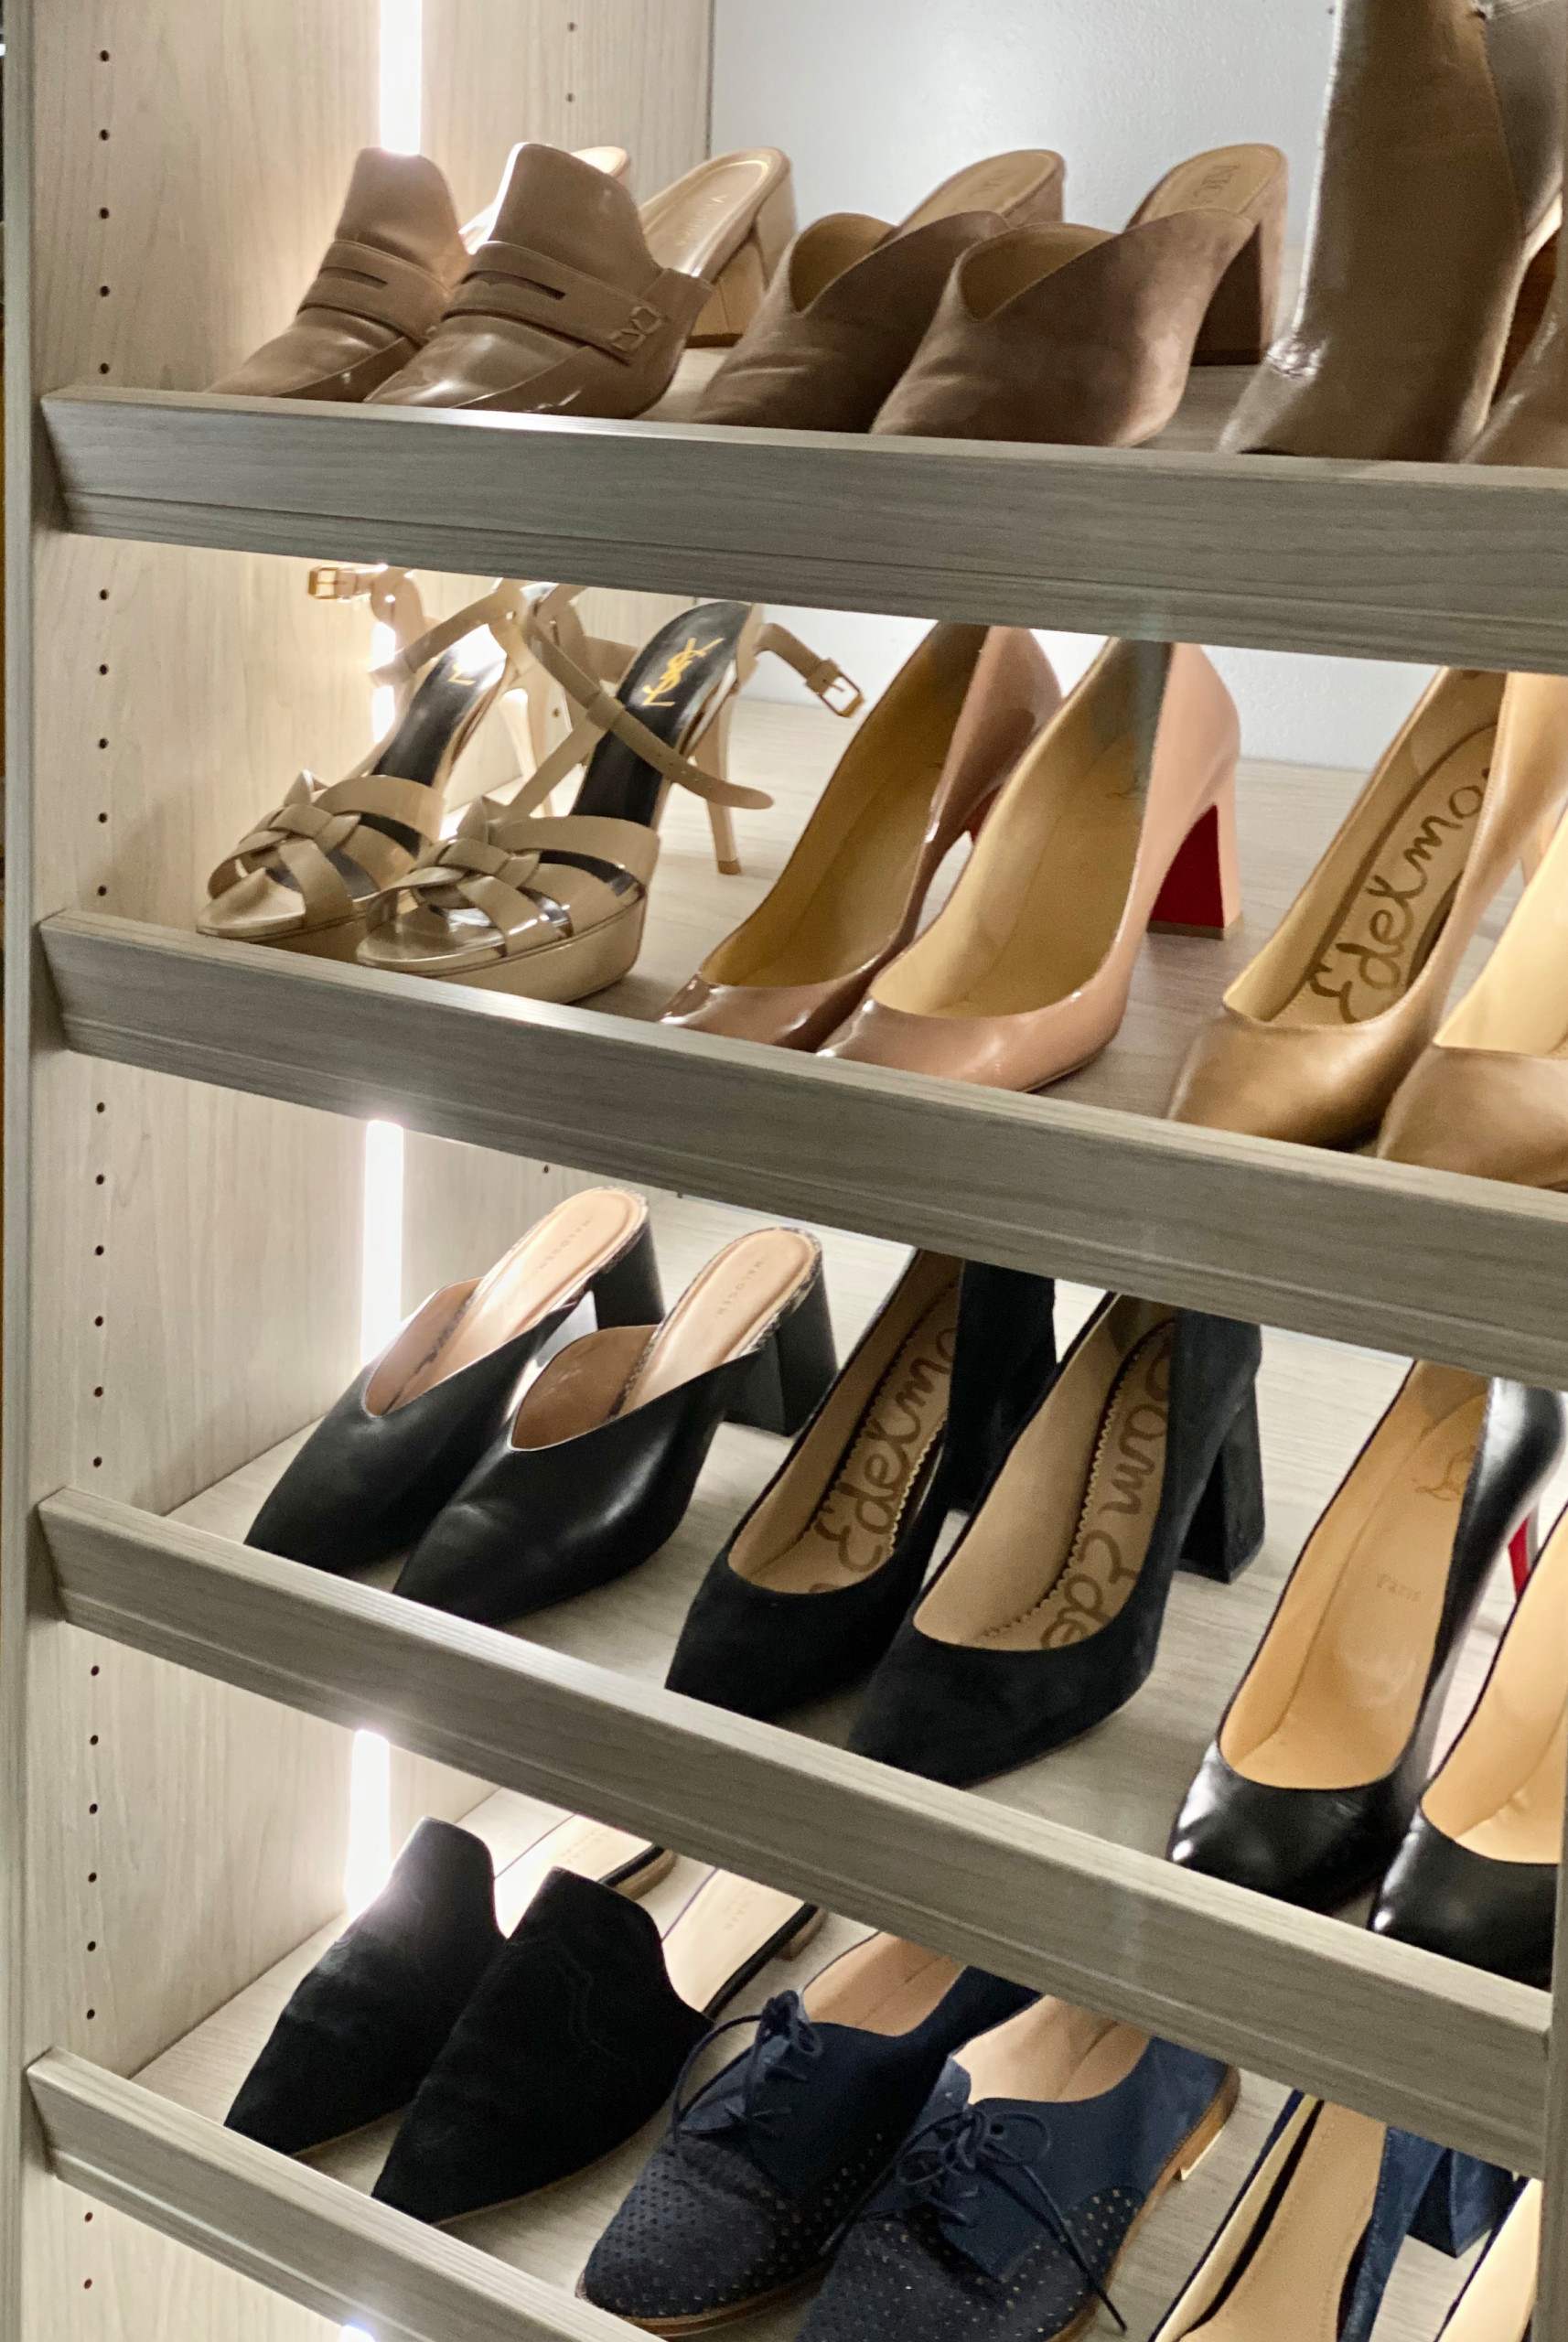 Slanted shoe shelves